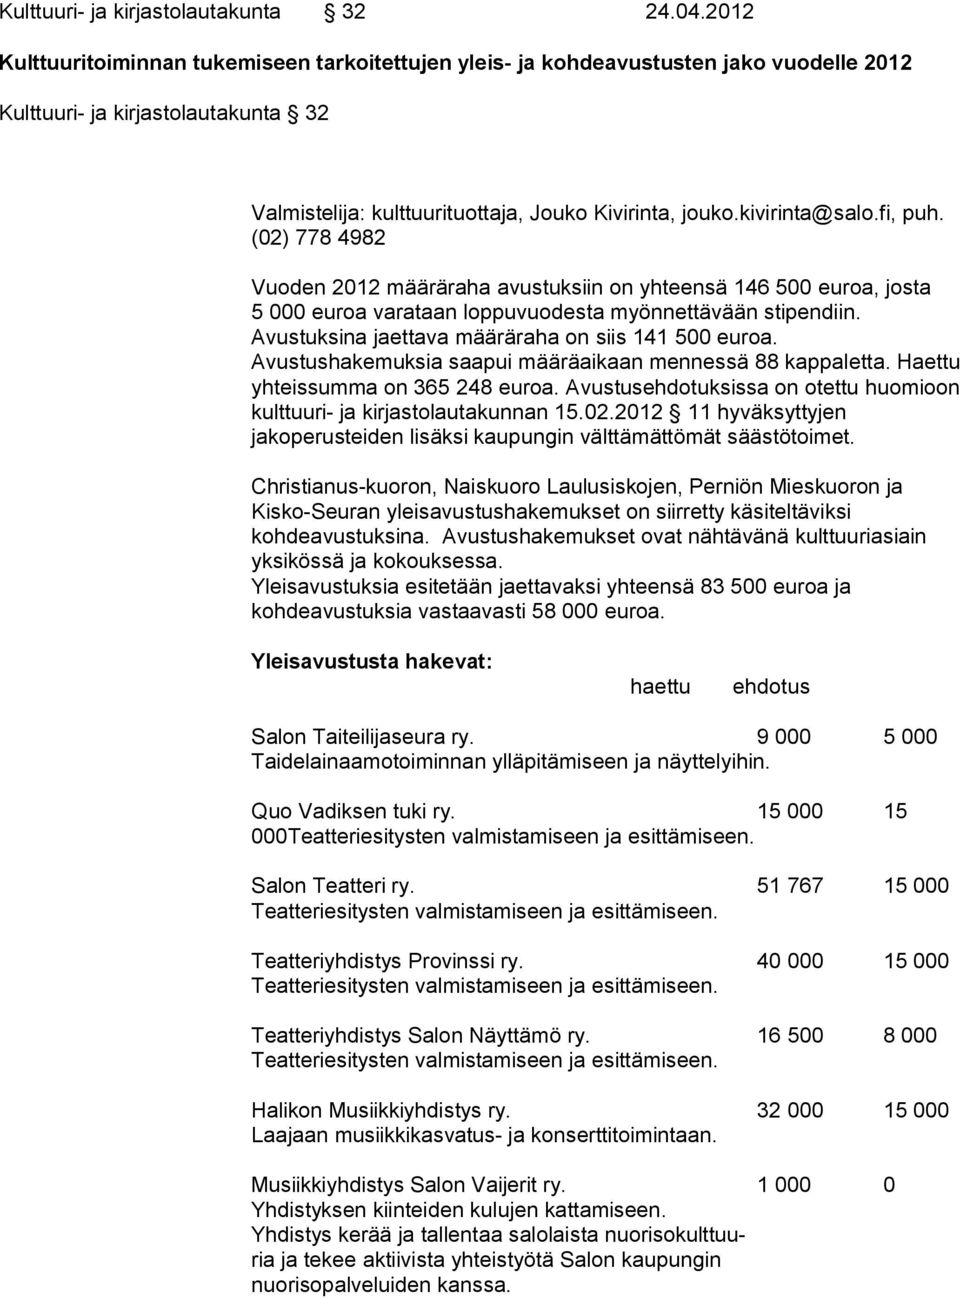 kivirinta@salo.fi, puh. (02) 778 4982 Vuoden 2012 määräraha avustuksiin on yhteensä 146 500 euroa, josta 5 000 euroa varataan loppuvuodesta myönnettävään stipendiin.